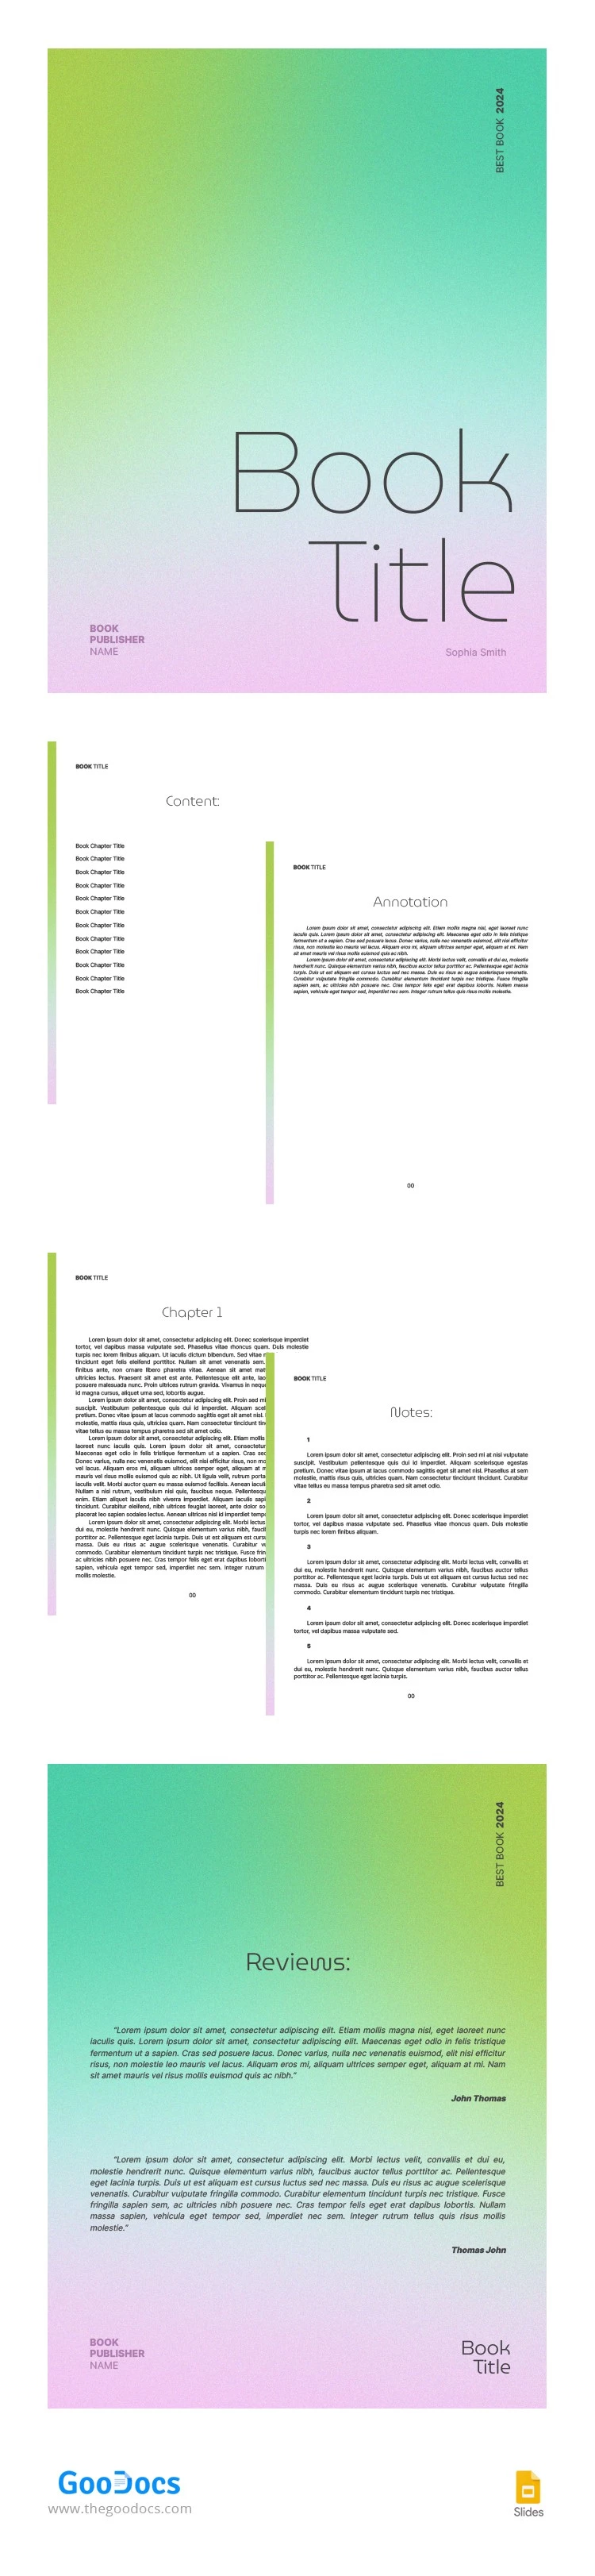 Libro electrónico minimalista de degradado - free Google Docs Template - 10066183